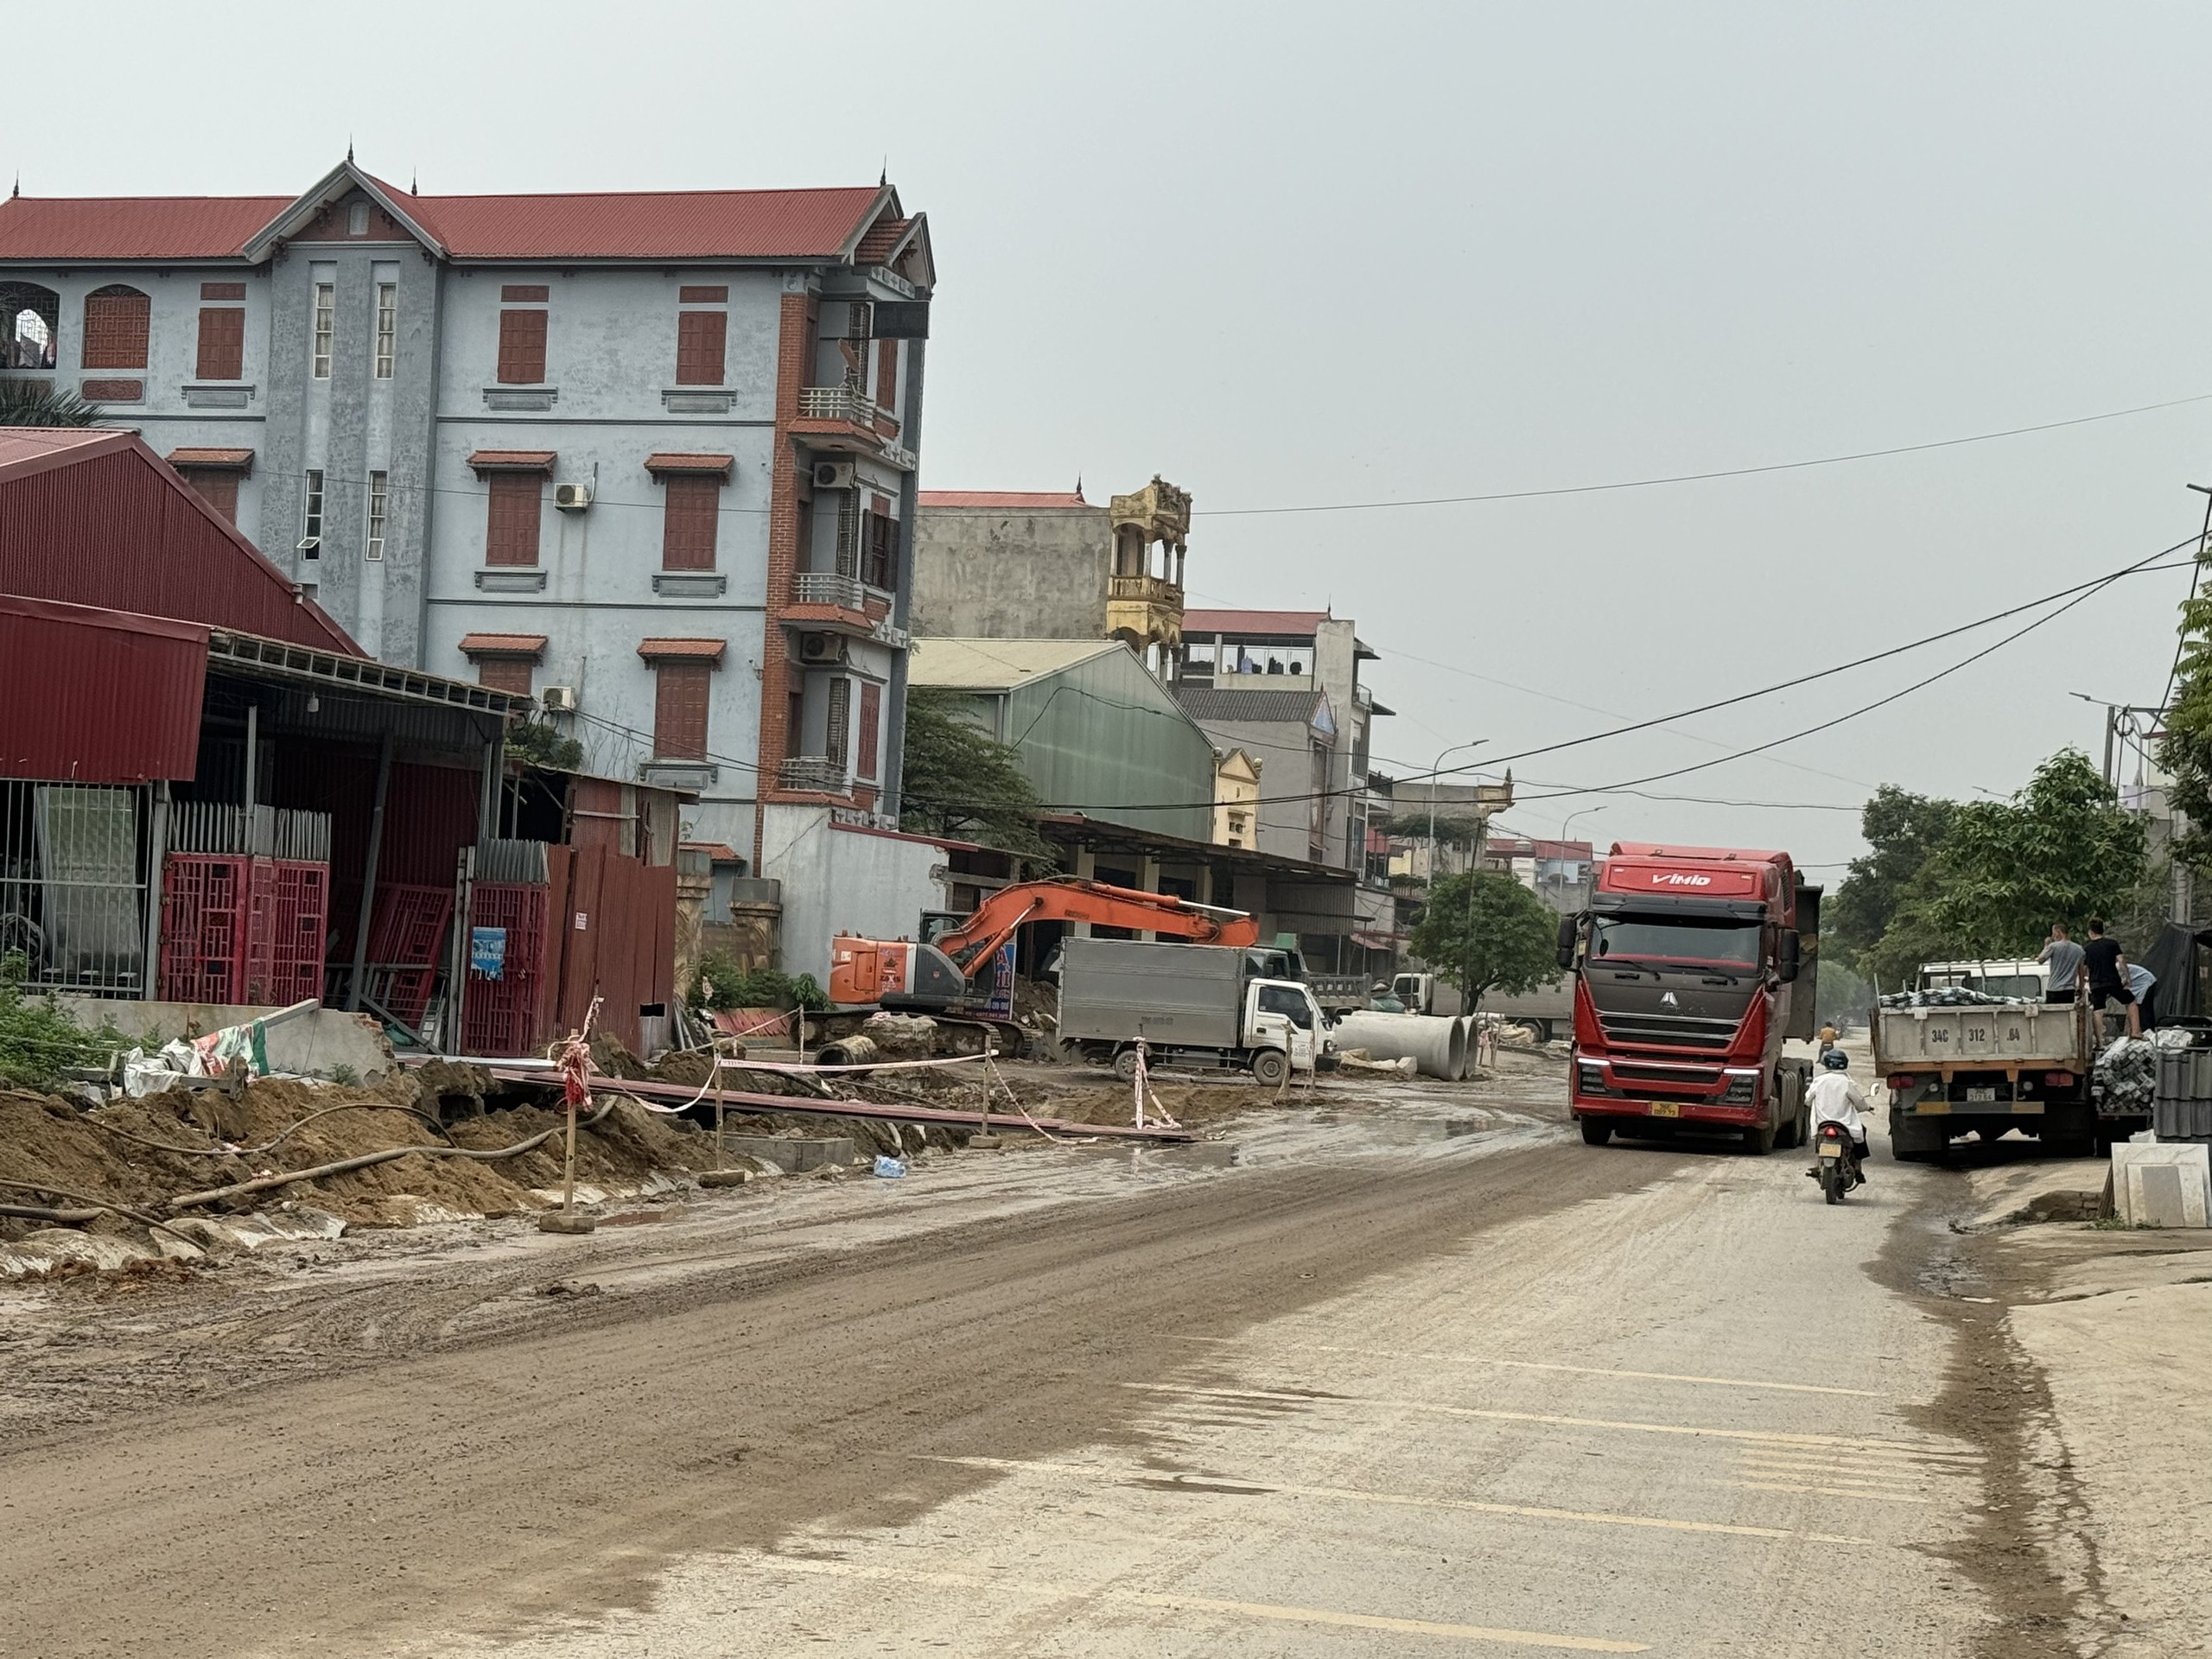 Bắc Ninh: Dự án cải tạo Tỉnh lộ 295 địa bàn huyện Yên Phong, vẫn là cách thi công thiếu an toàn- Ảnh 4.